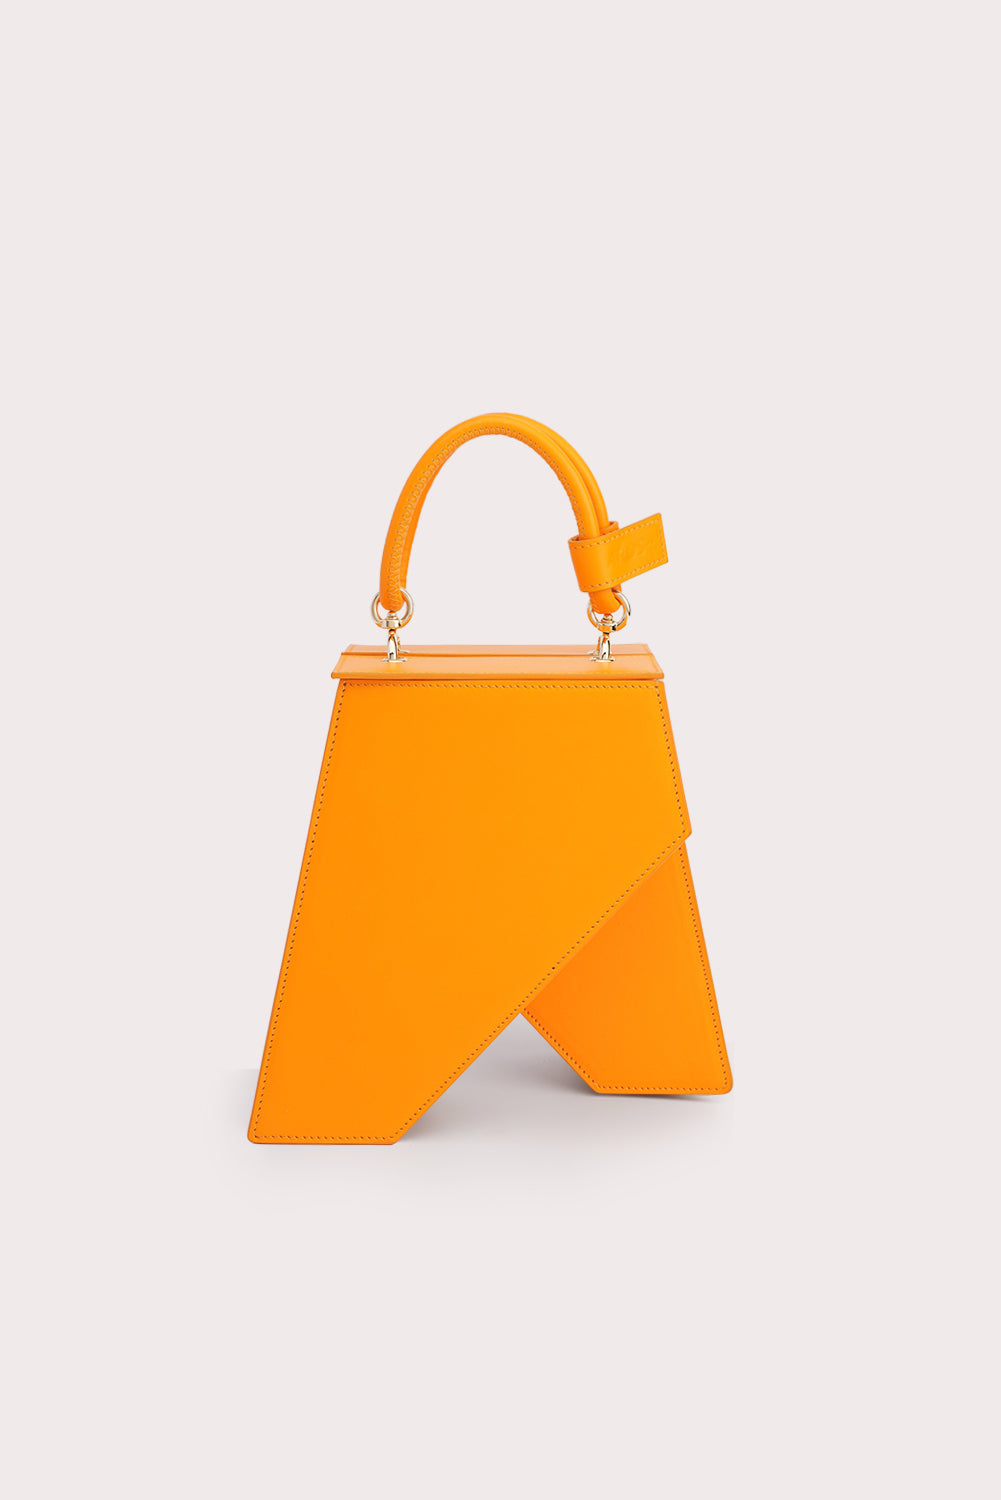 Trapezoid Tapo Bag in Mango Orange